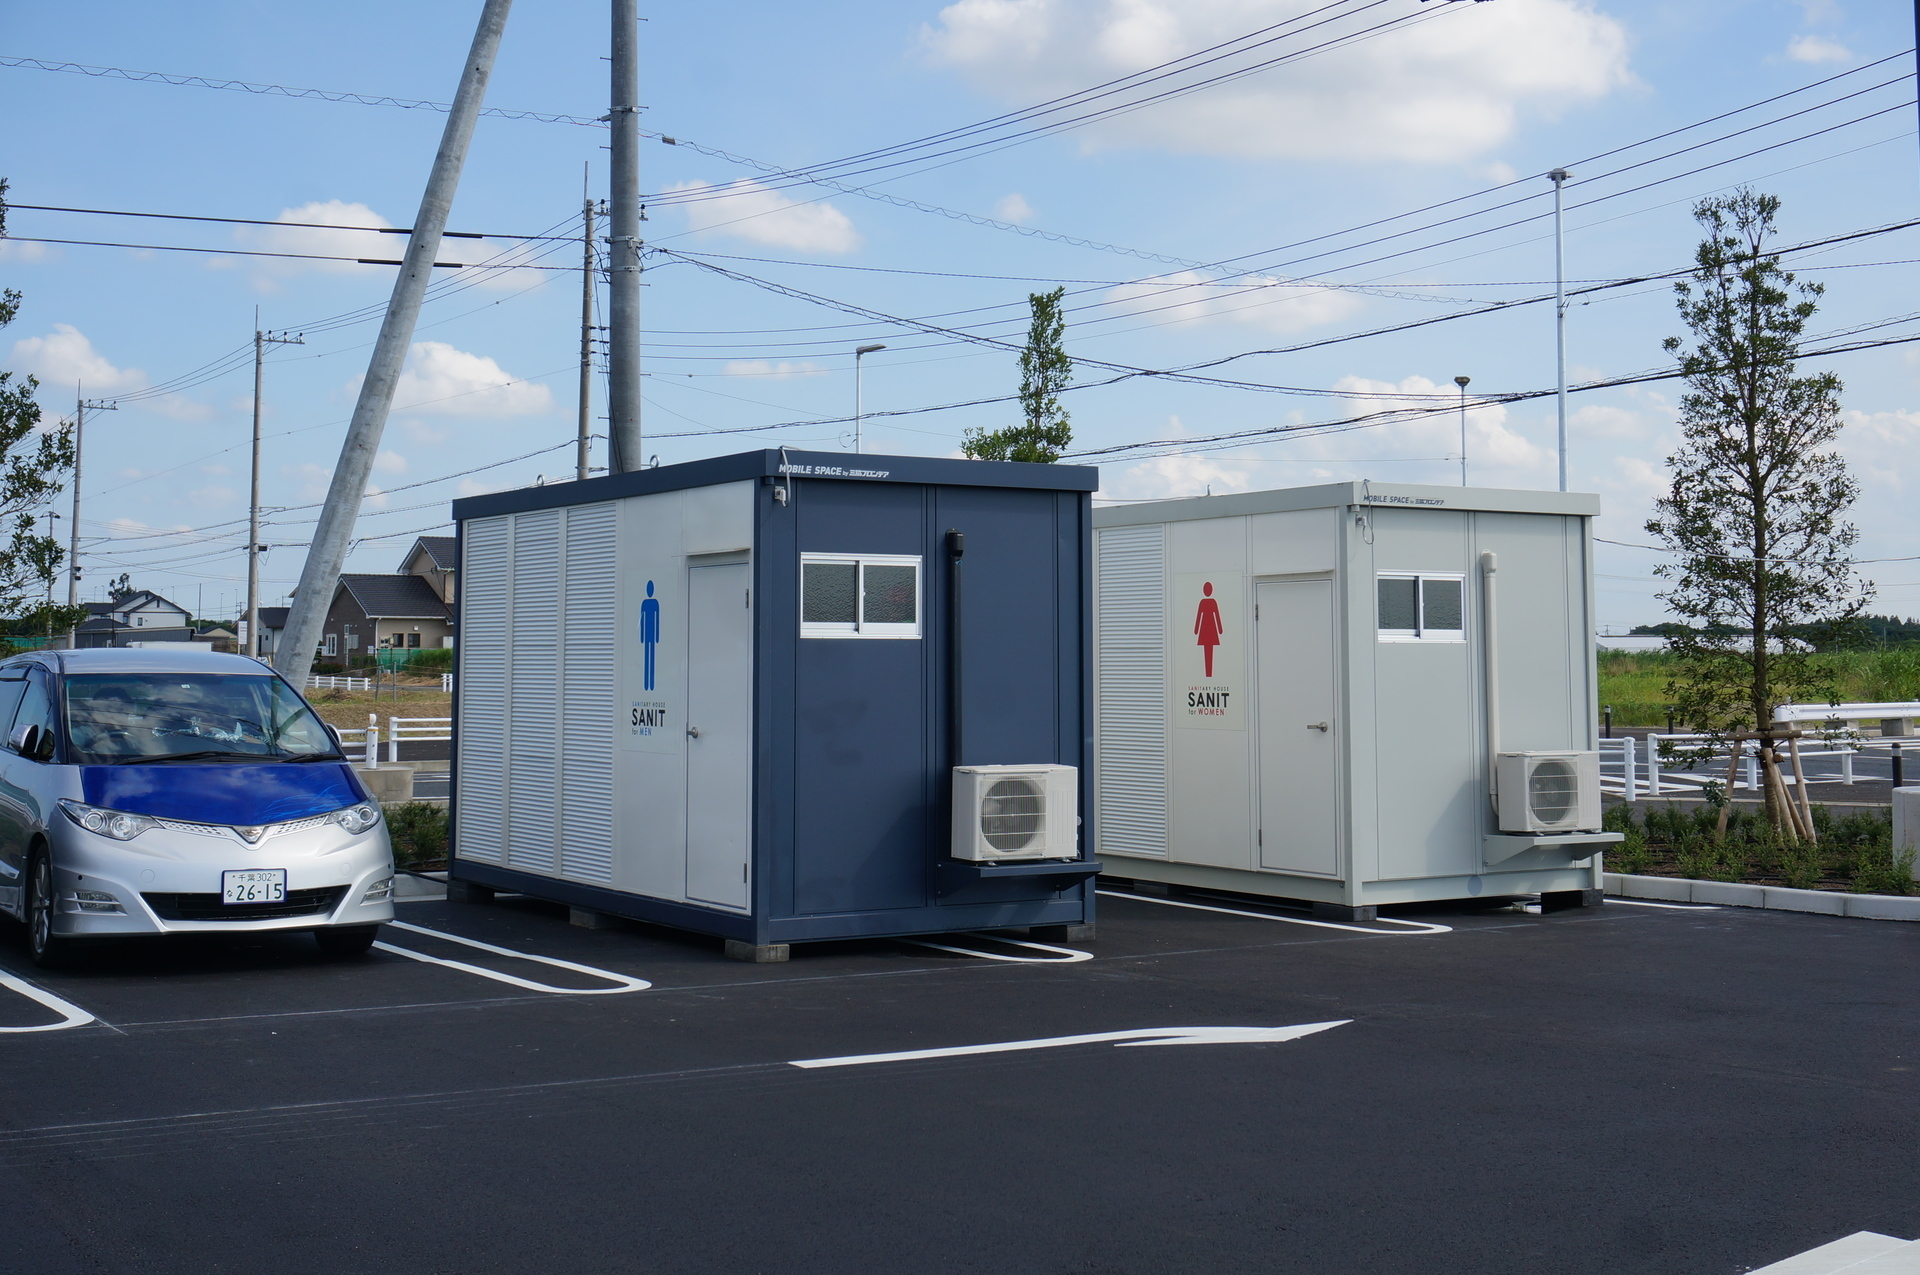 コストコ木更津倉庫店のトイレの場所がわかった Ogu S Blog かずさ便り ちょっとだけpcの話も